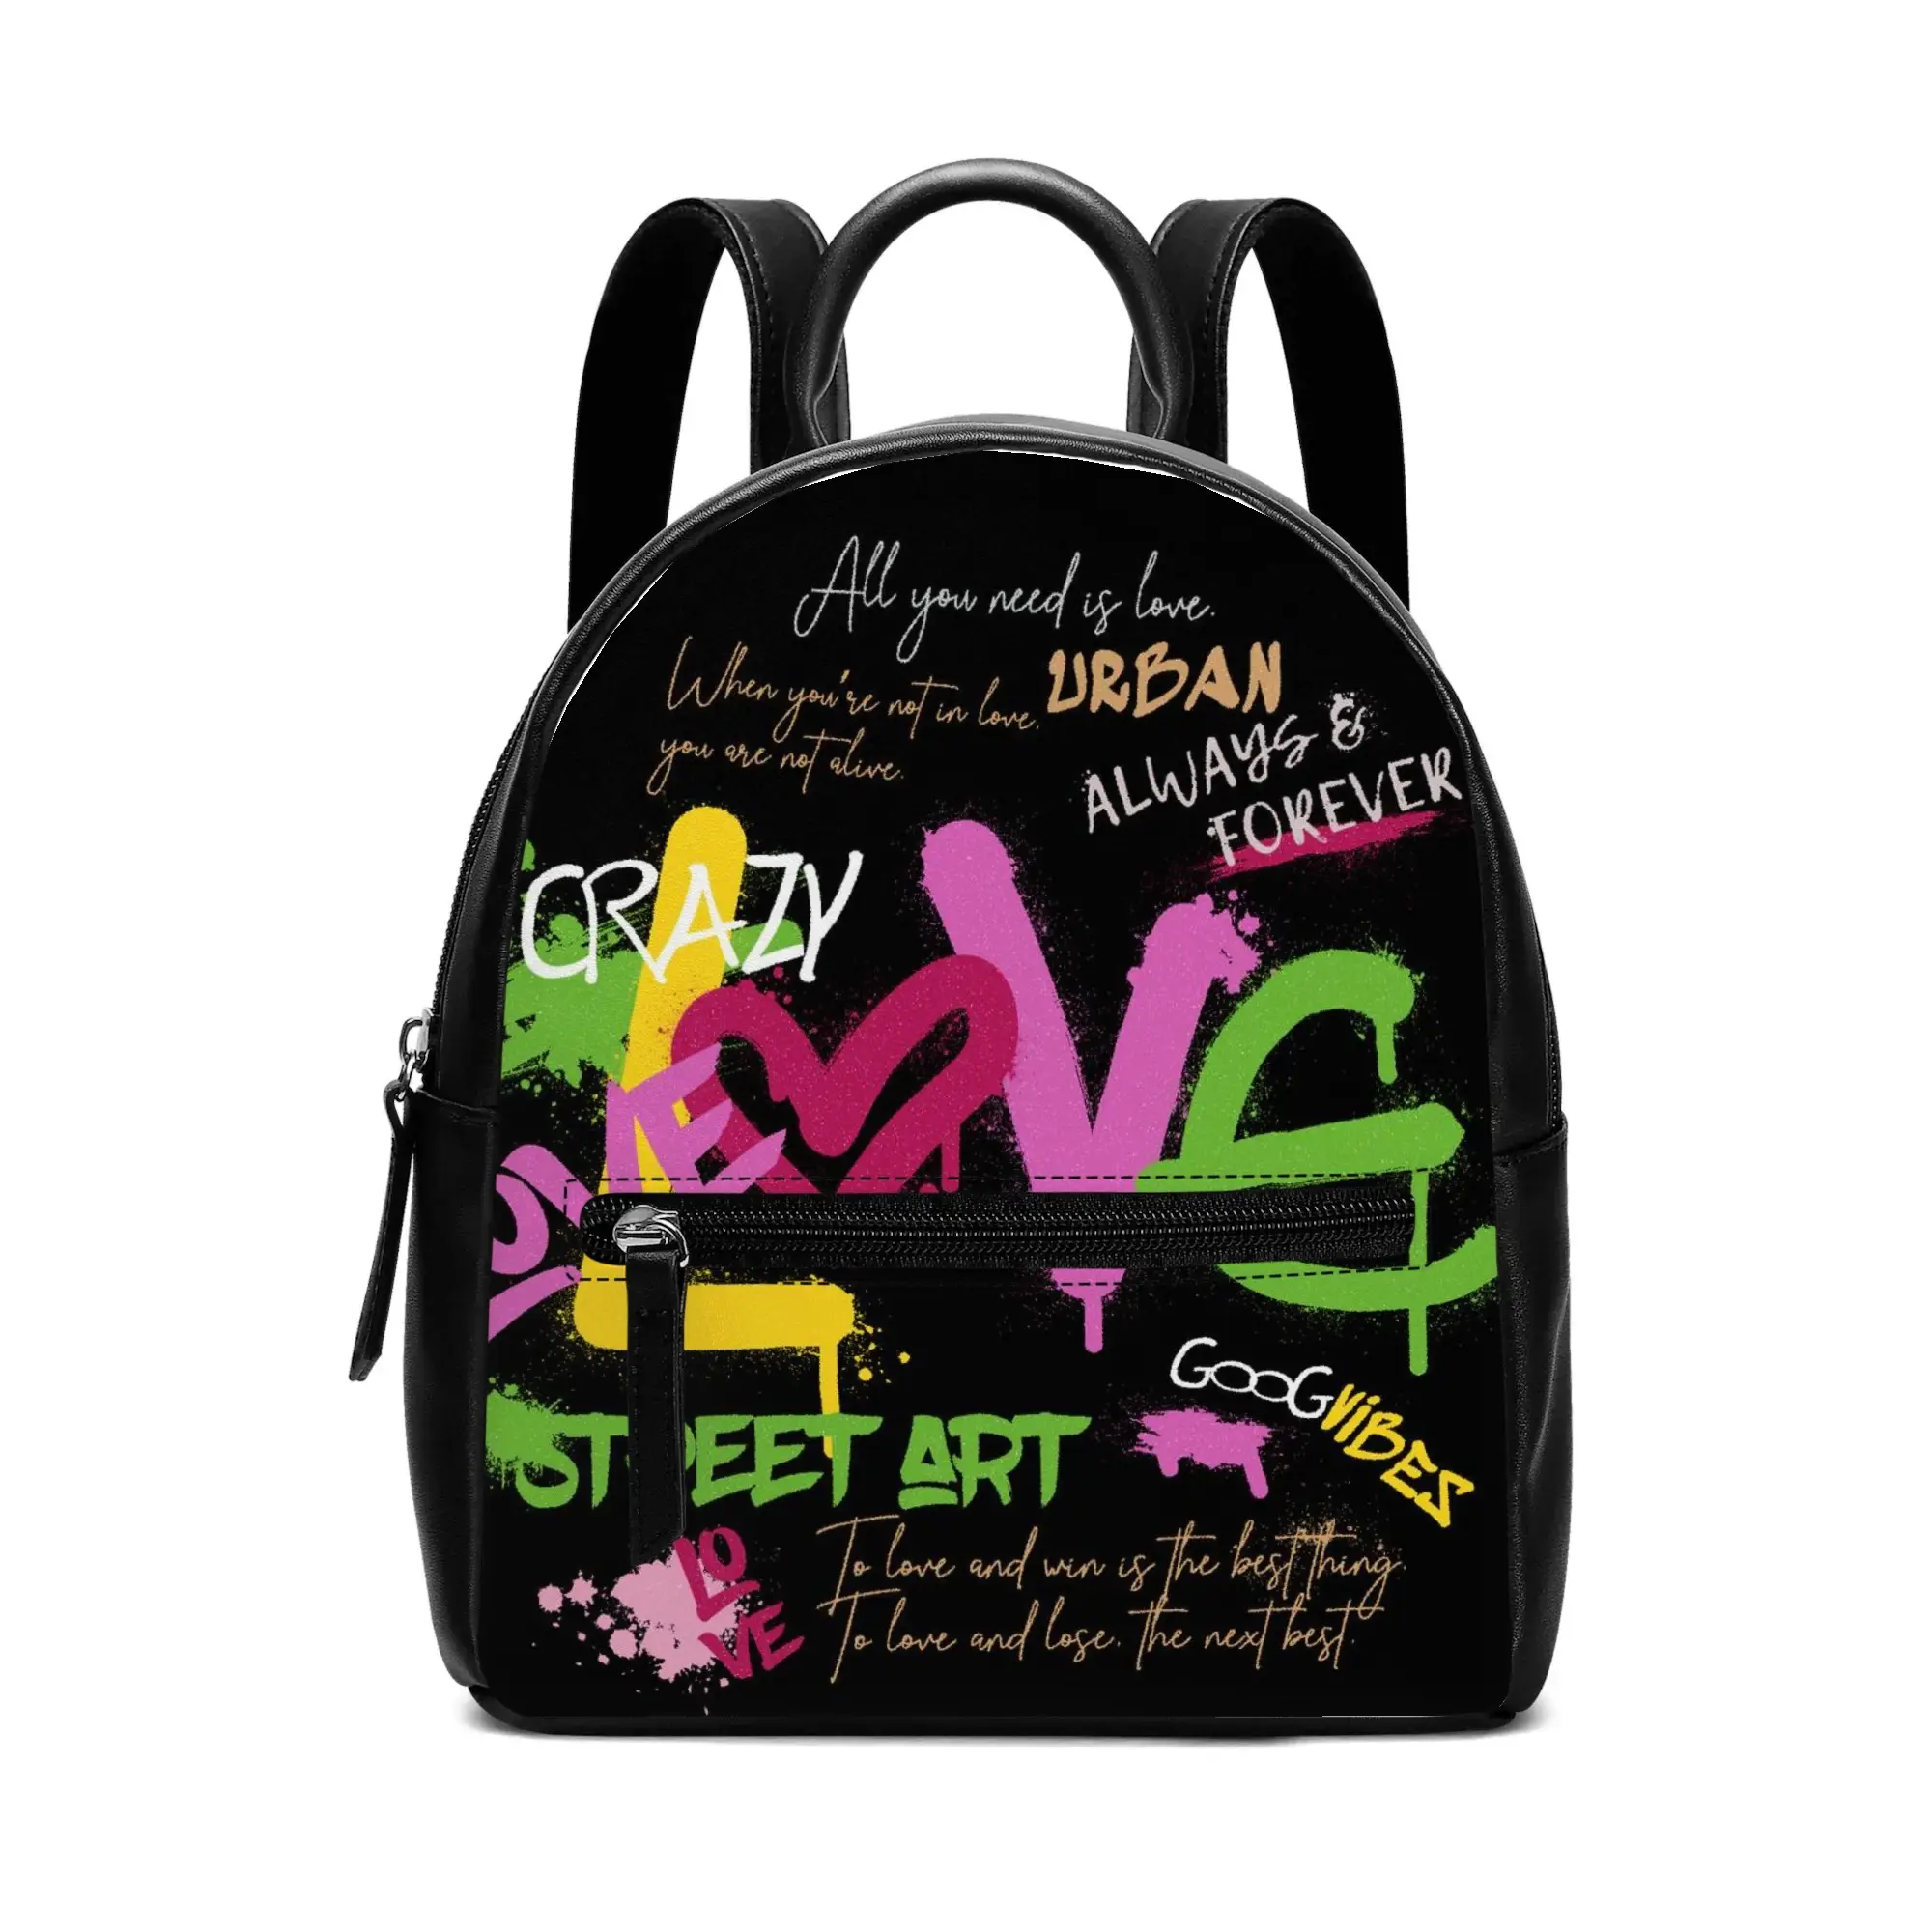 Sıcak satış okul Mini Pu deri özel baskı sırt çantası kadın moda sırt çantası çantalar küçük okul çantaları kızlar için seyahat çantası